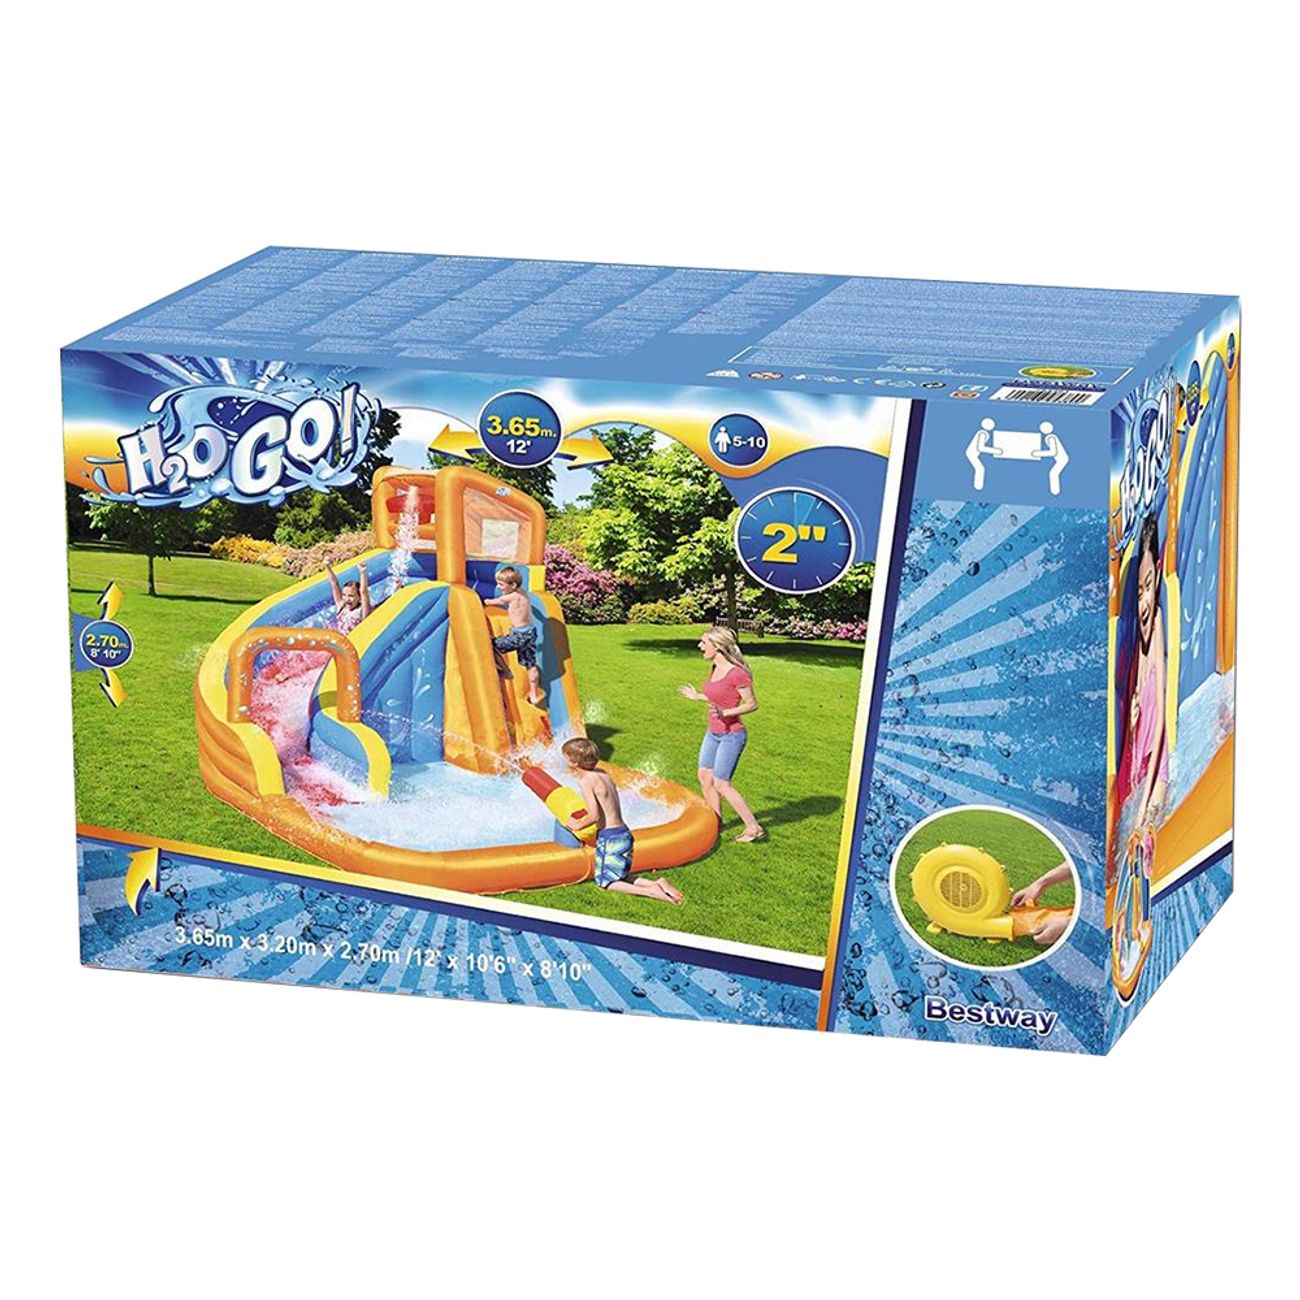 h2ogo-splash-water-zone-uppblasbar-vattenpark-9